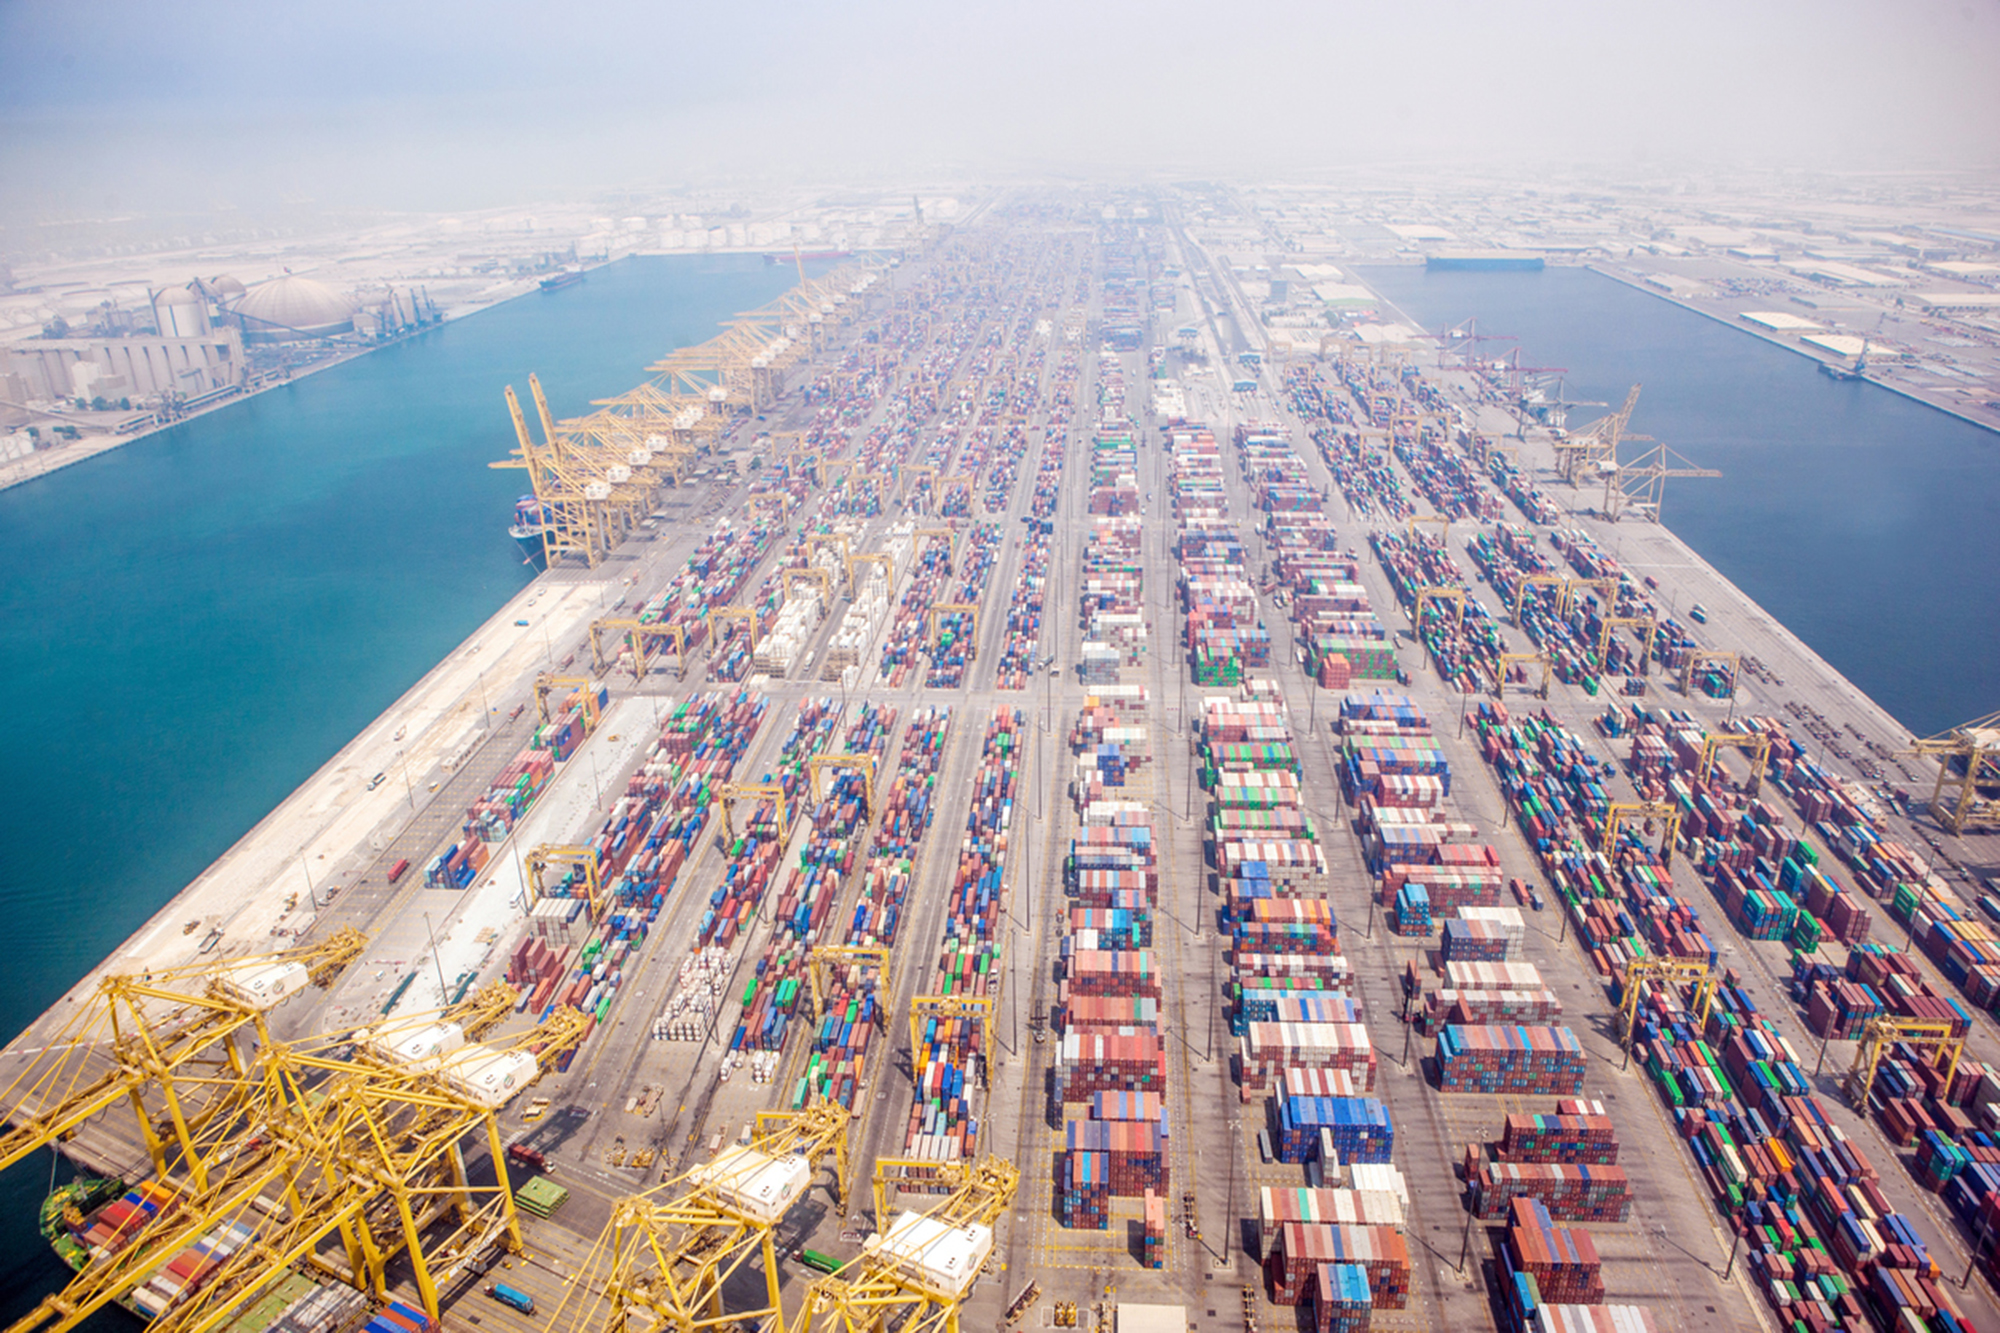 UAE “lột xác” bến thuyền thành siêu cảng thế giới - Ảnh 1.